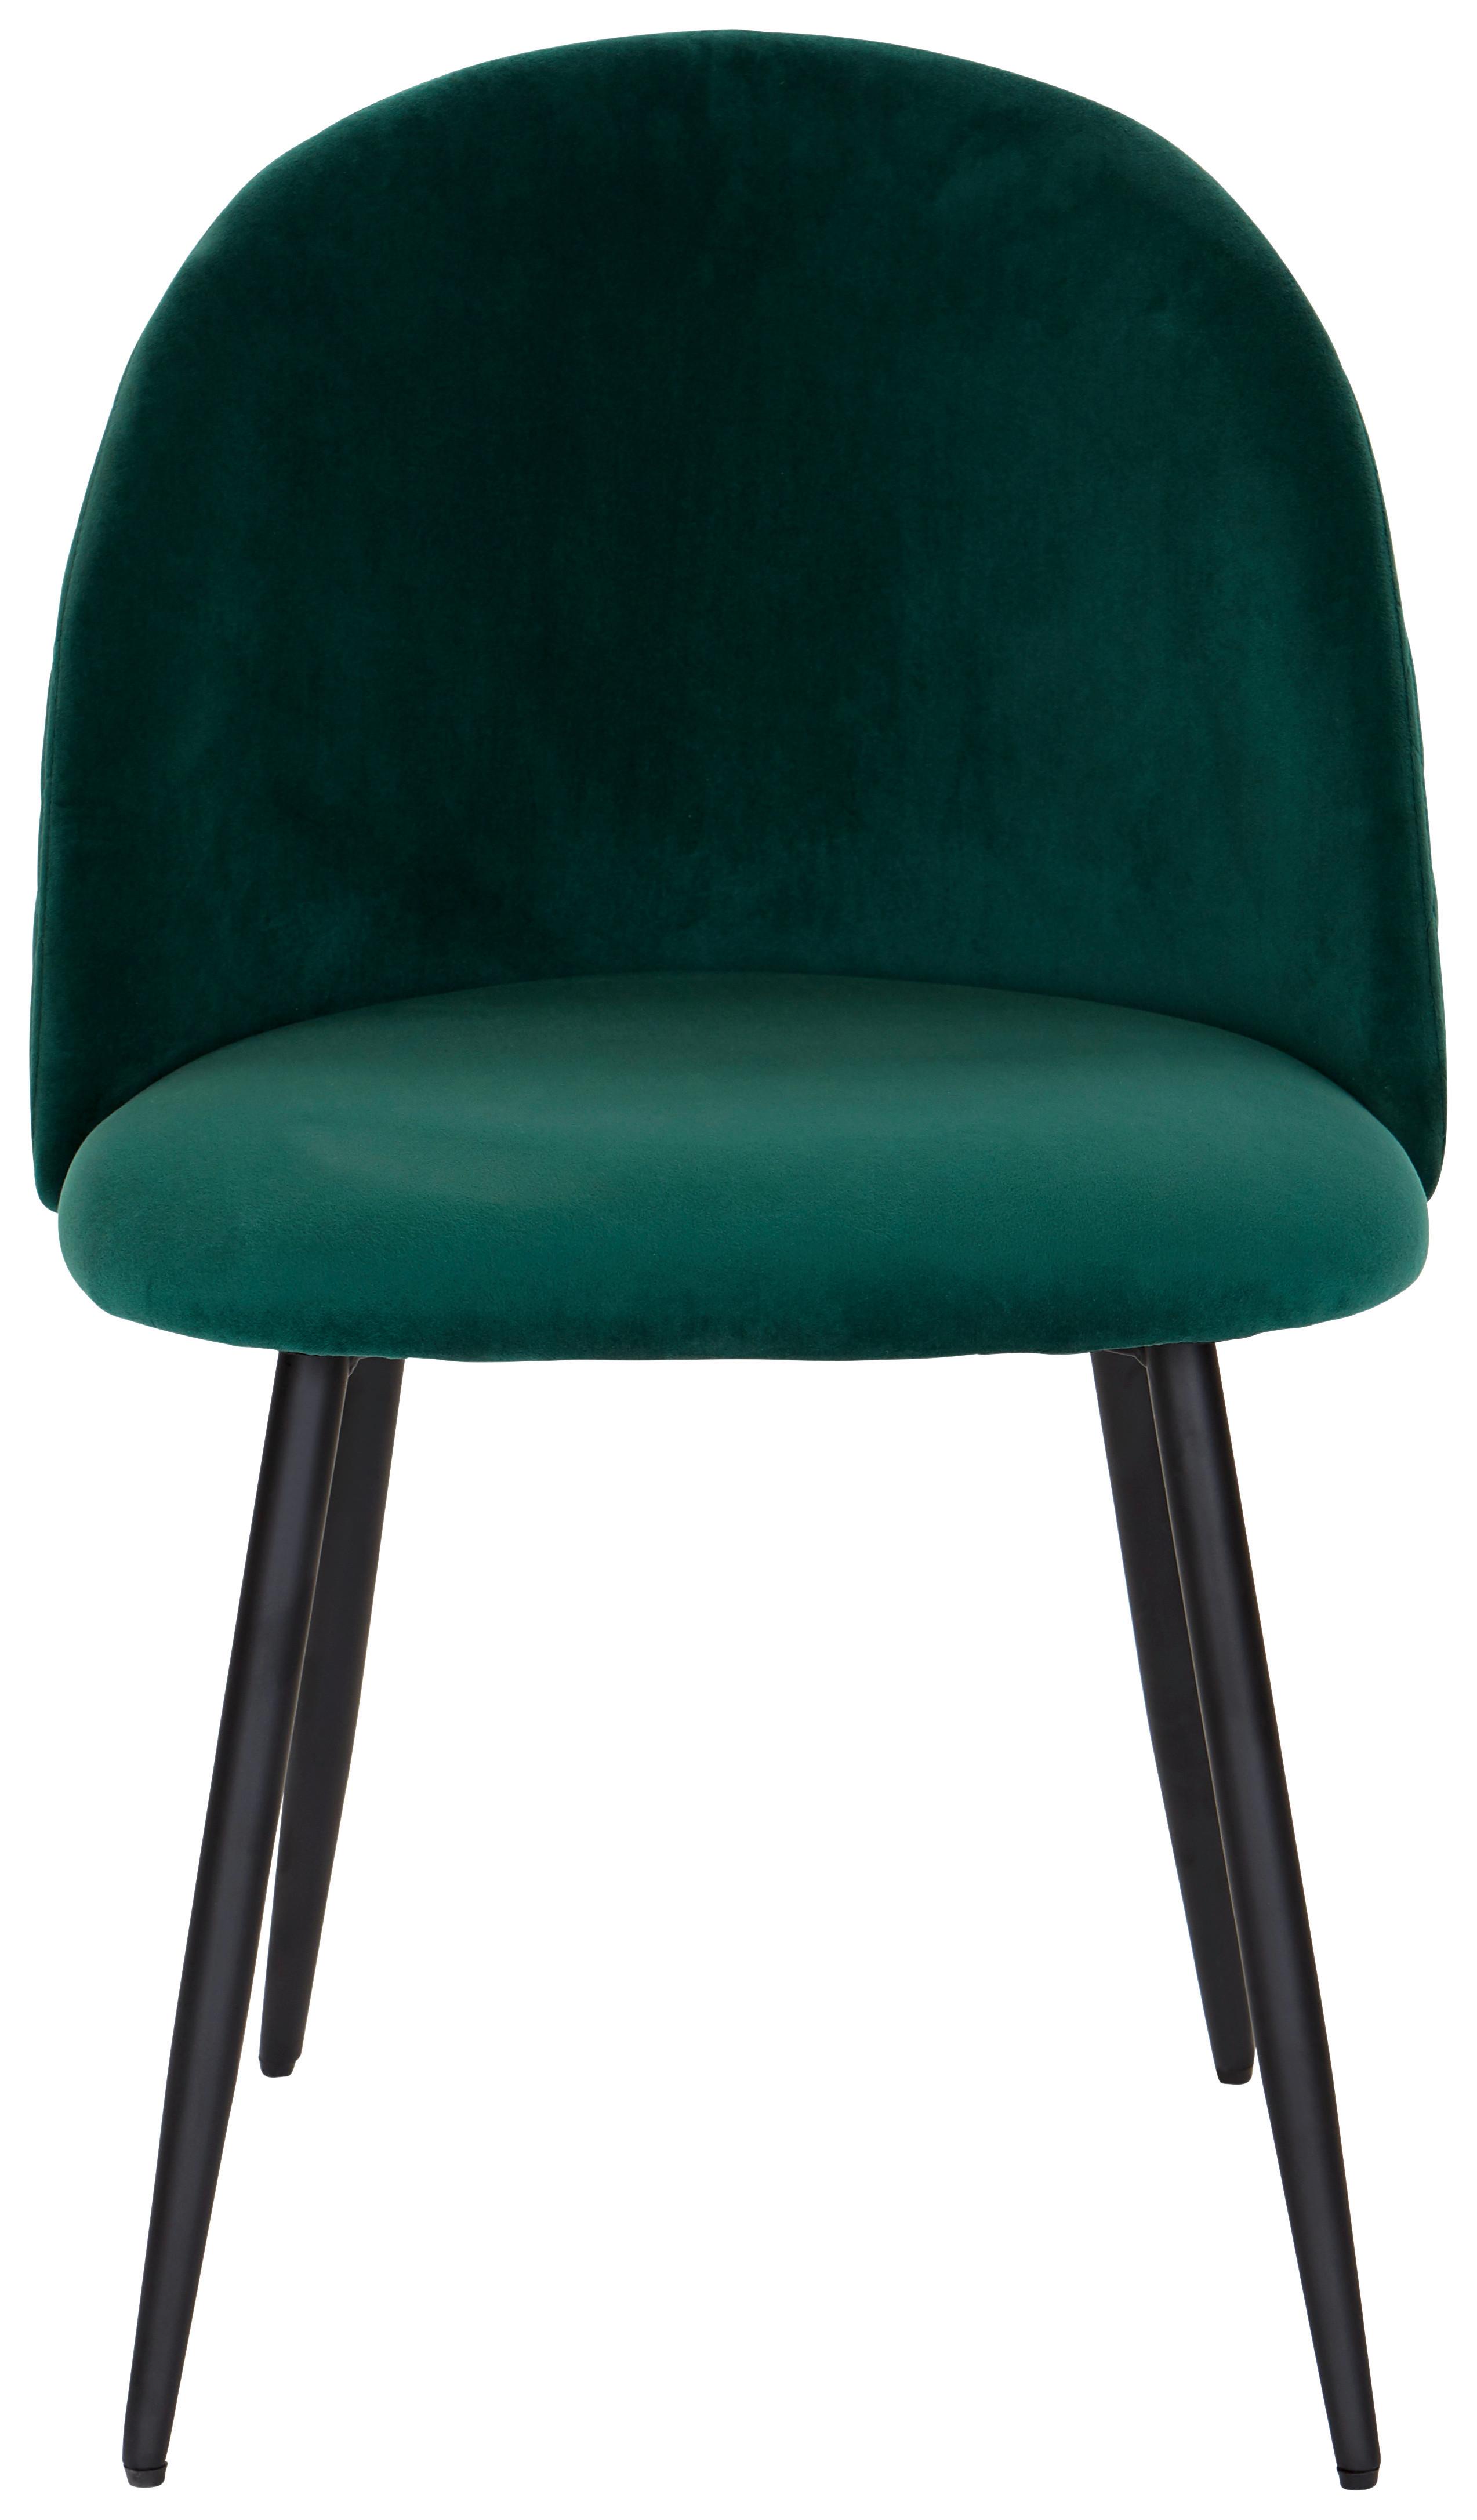 Jídelní Židle Torres Zelená - černá/zelená, Moderní, kov/dřevo (51/79/58cm) - MID.YOU